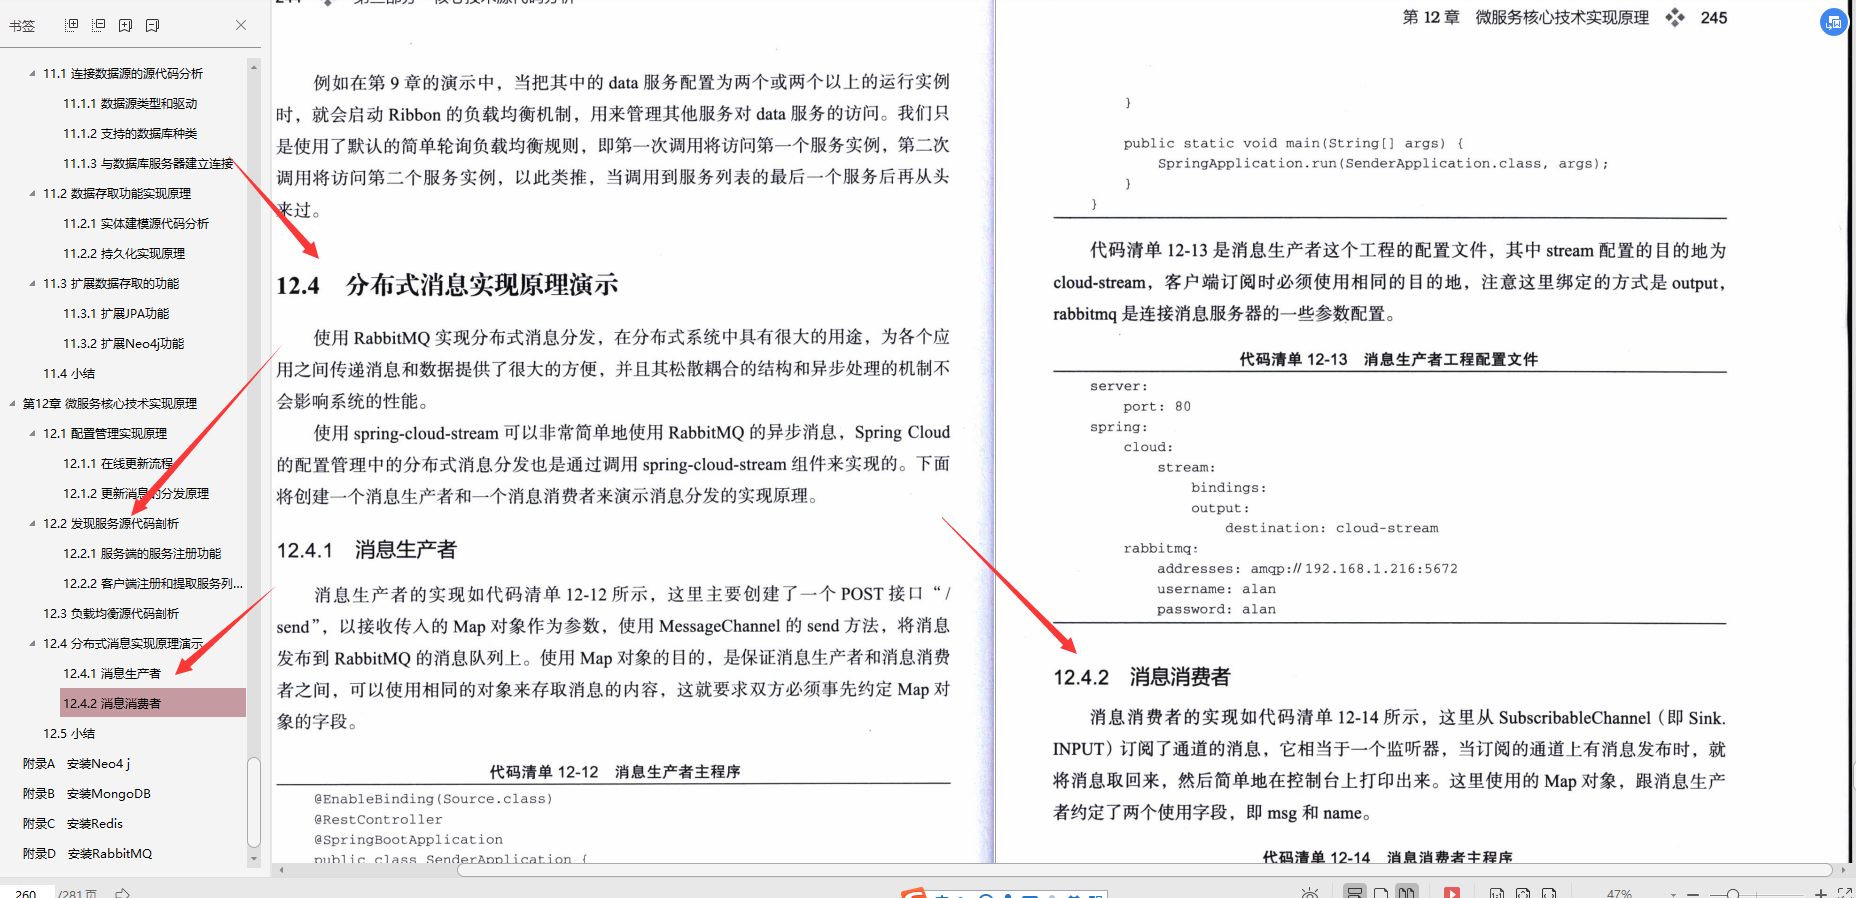 全网最全，Alibaba技术官甩出的Springboot笔记